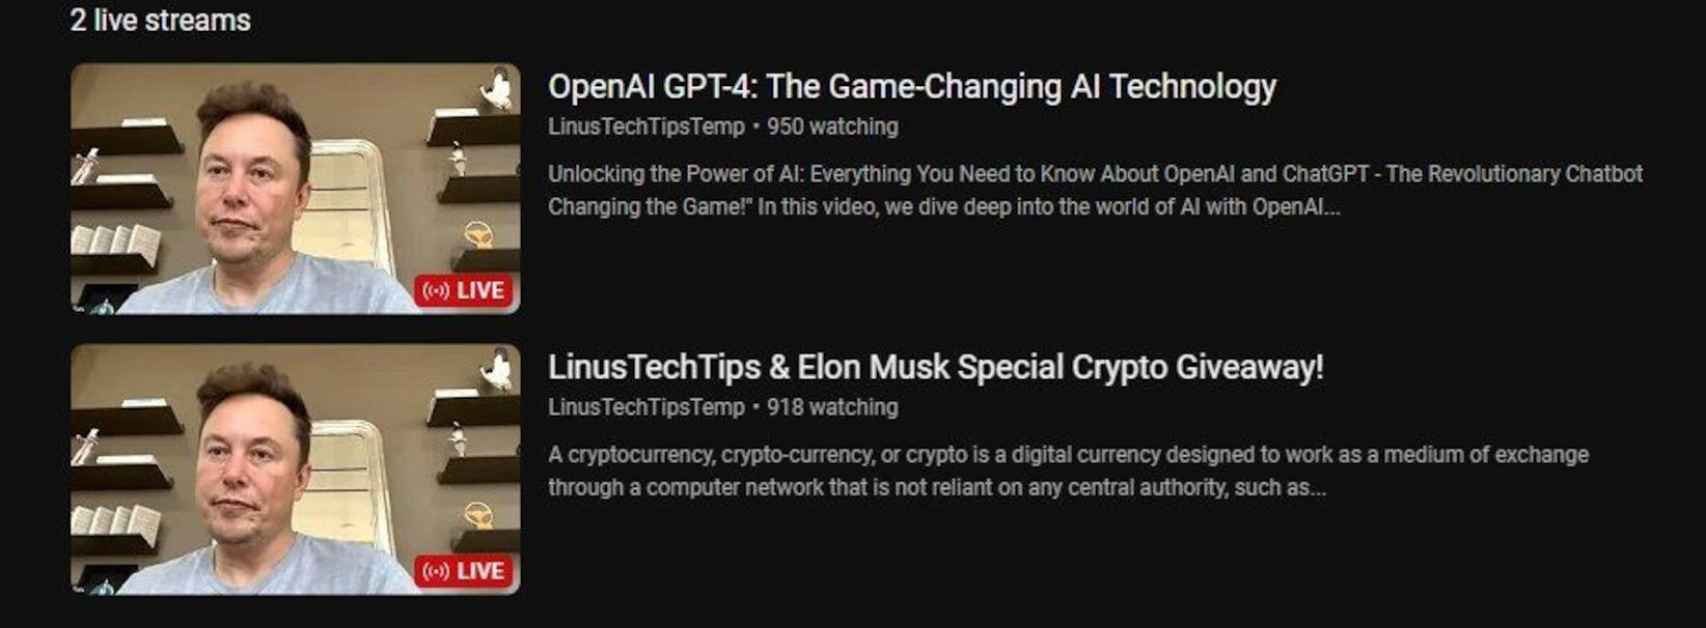 Canales de YouTube han sido hackeados para mostrar vídeos con Elon Musk